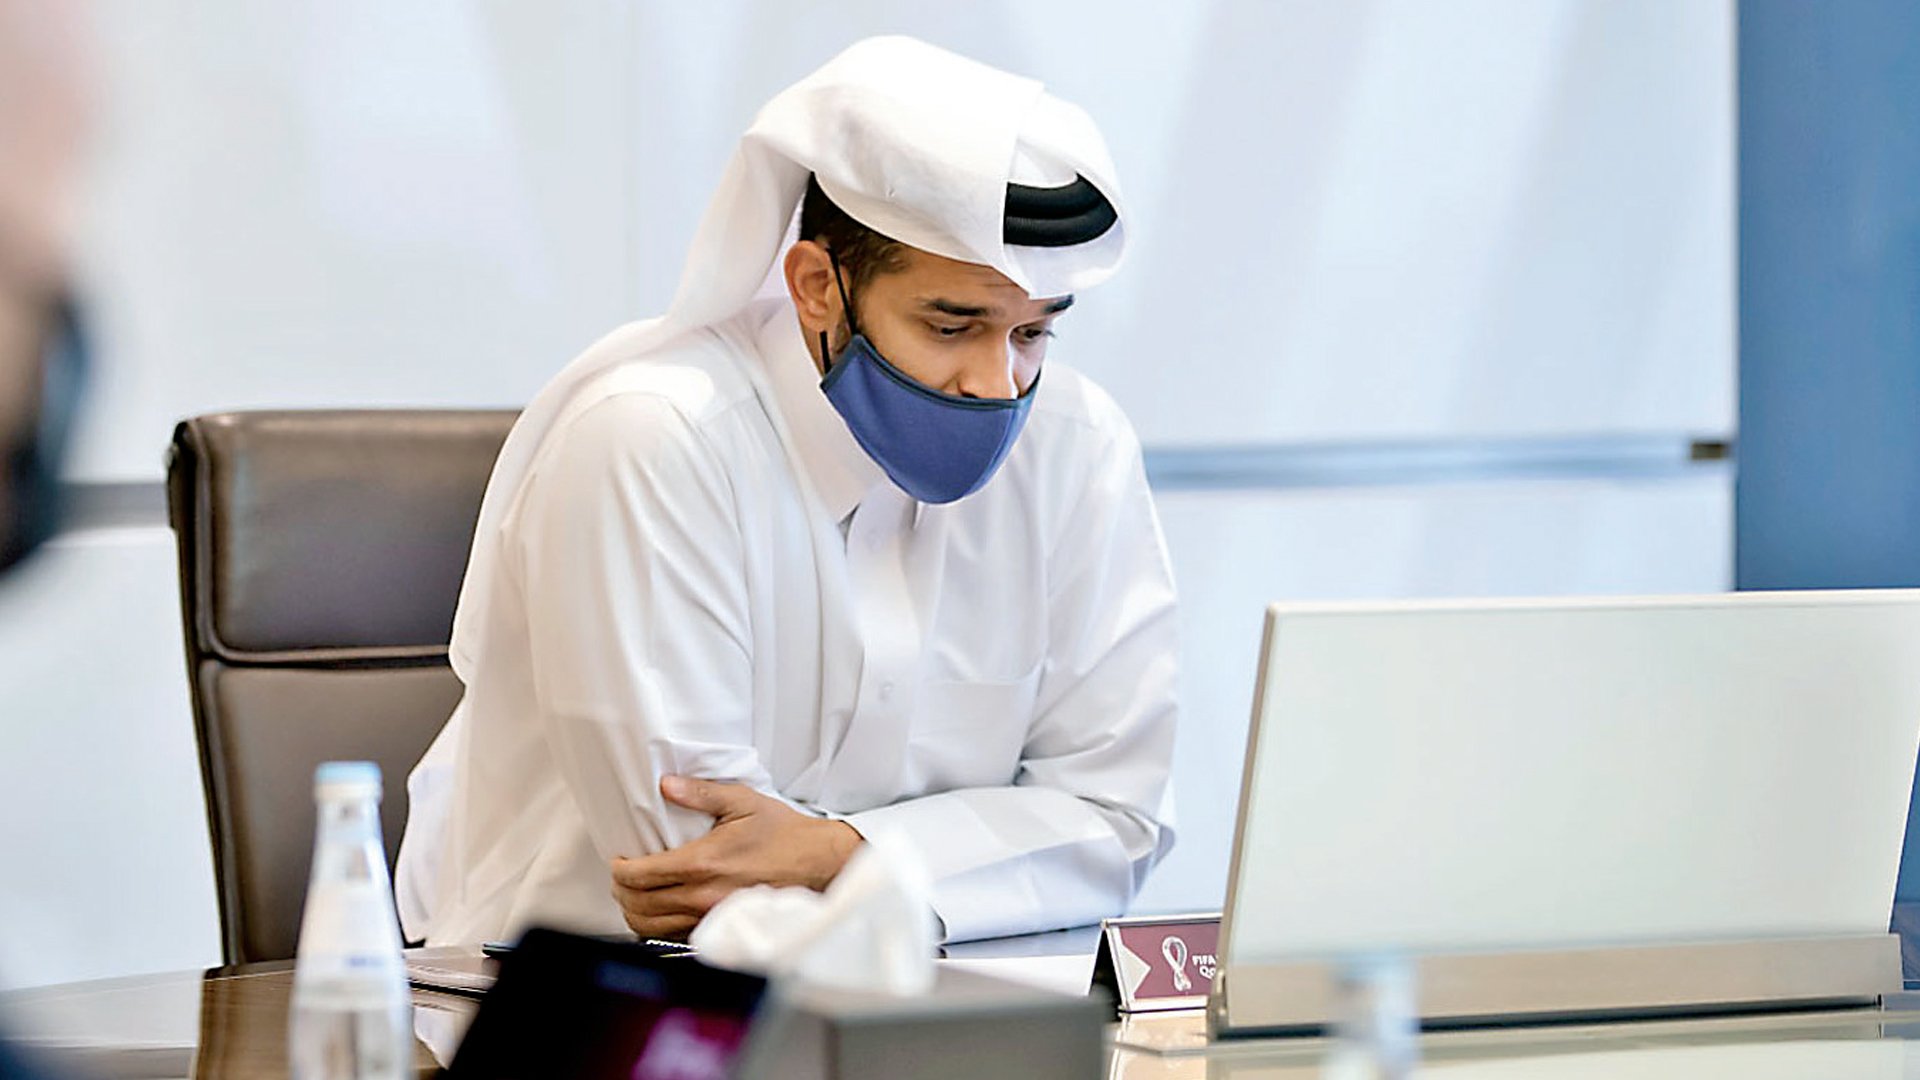 سعادة حسن الذوادي، رئيس بطولة كأس العالم FIFA قطر 2022™ والأمين العام للجنة العليا للمشاريع والإرث